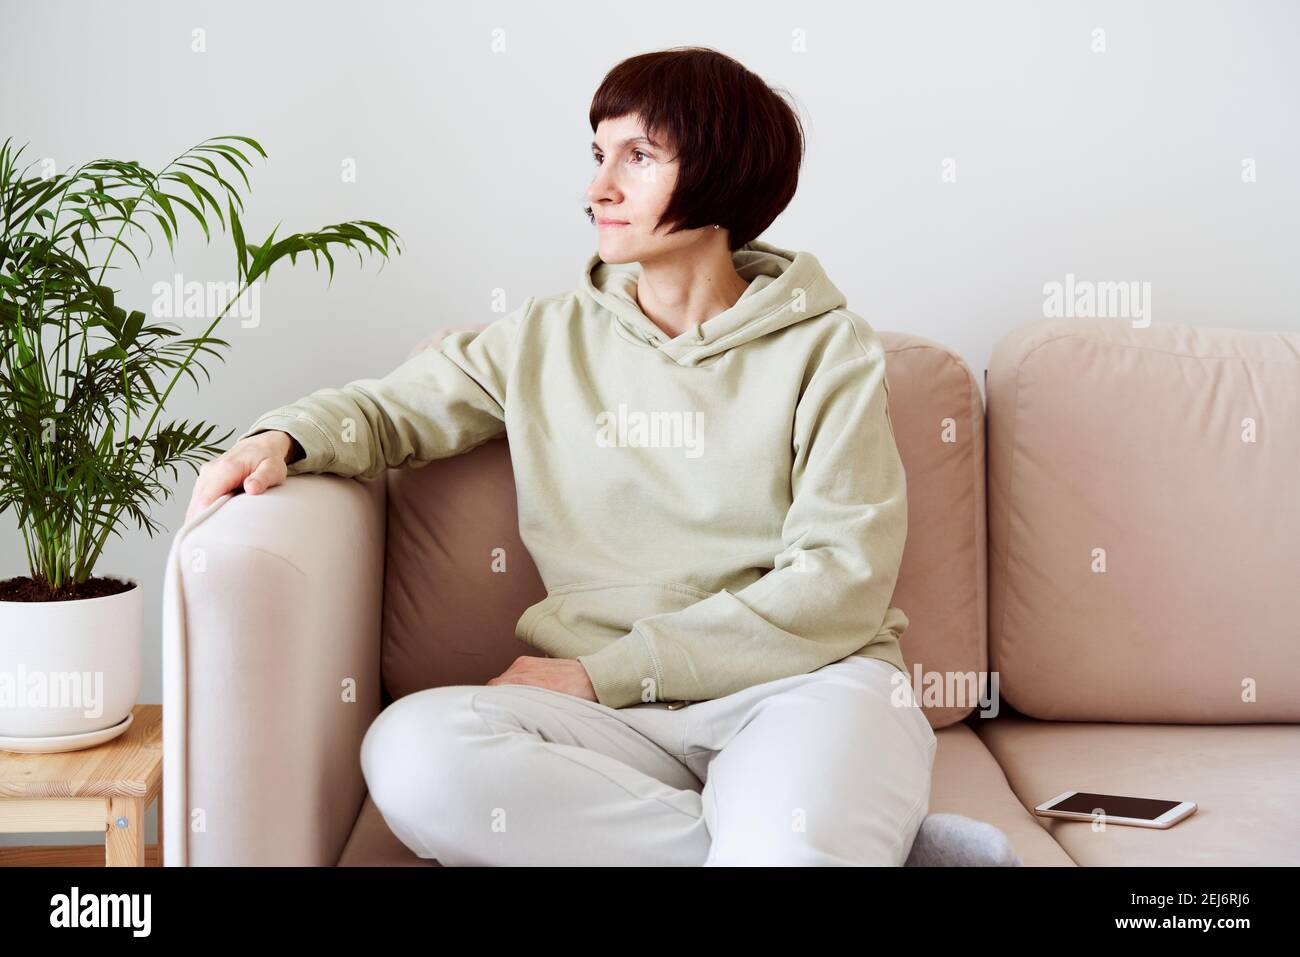 Reife Frau verbringt Zeit zu Hause, sitzt im Zimmer auf der Couch und sieht traurig aus. Digitales Detox-Konzept Stockfoto